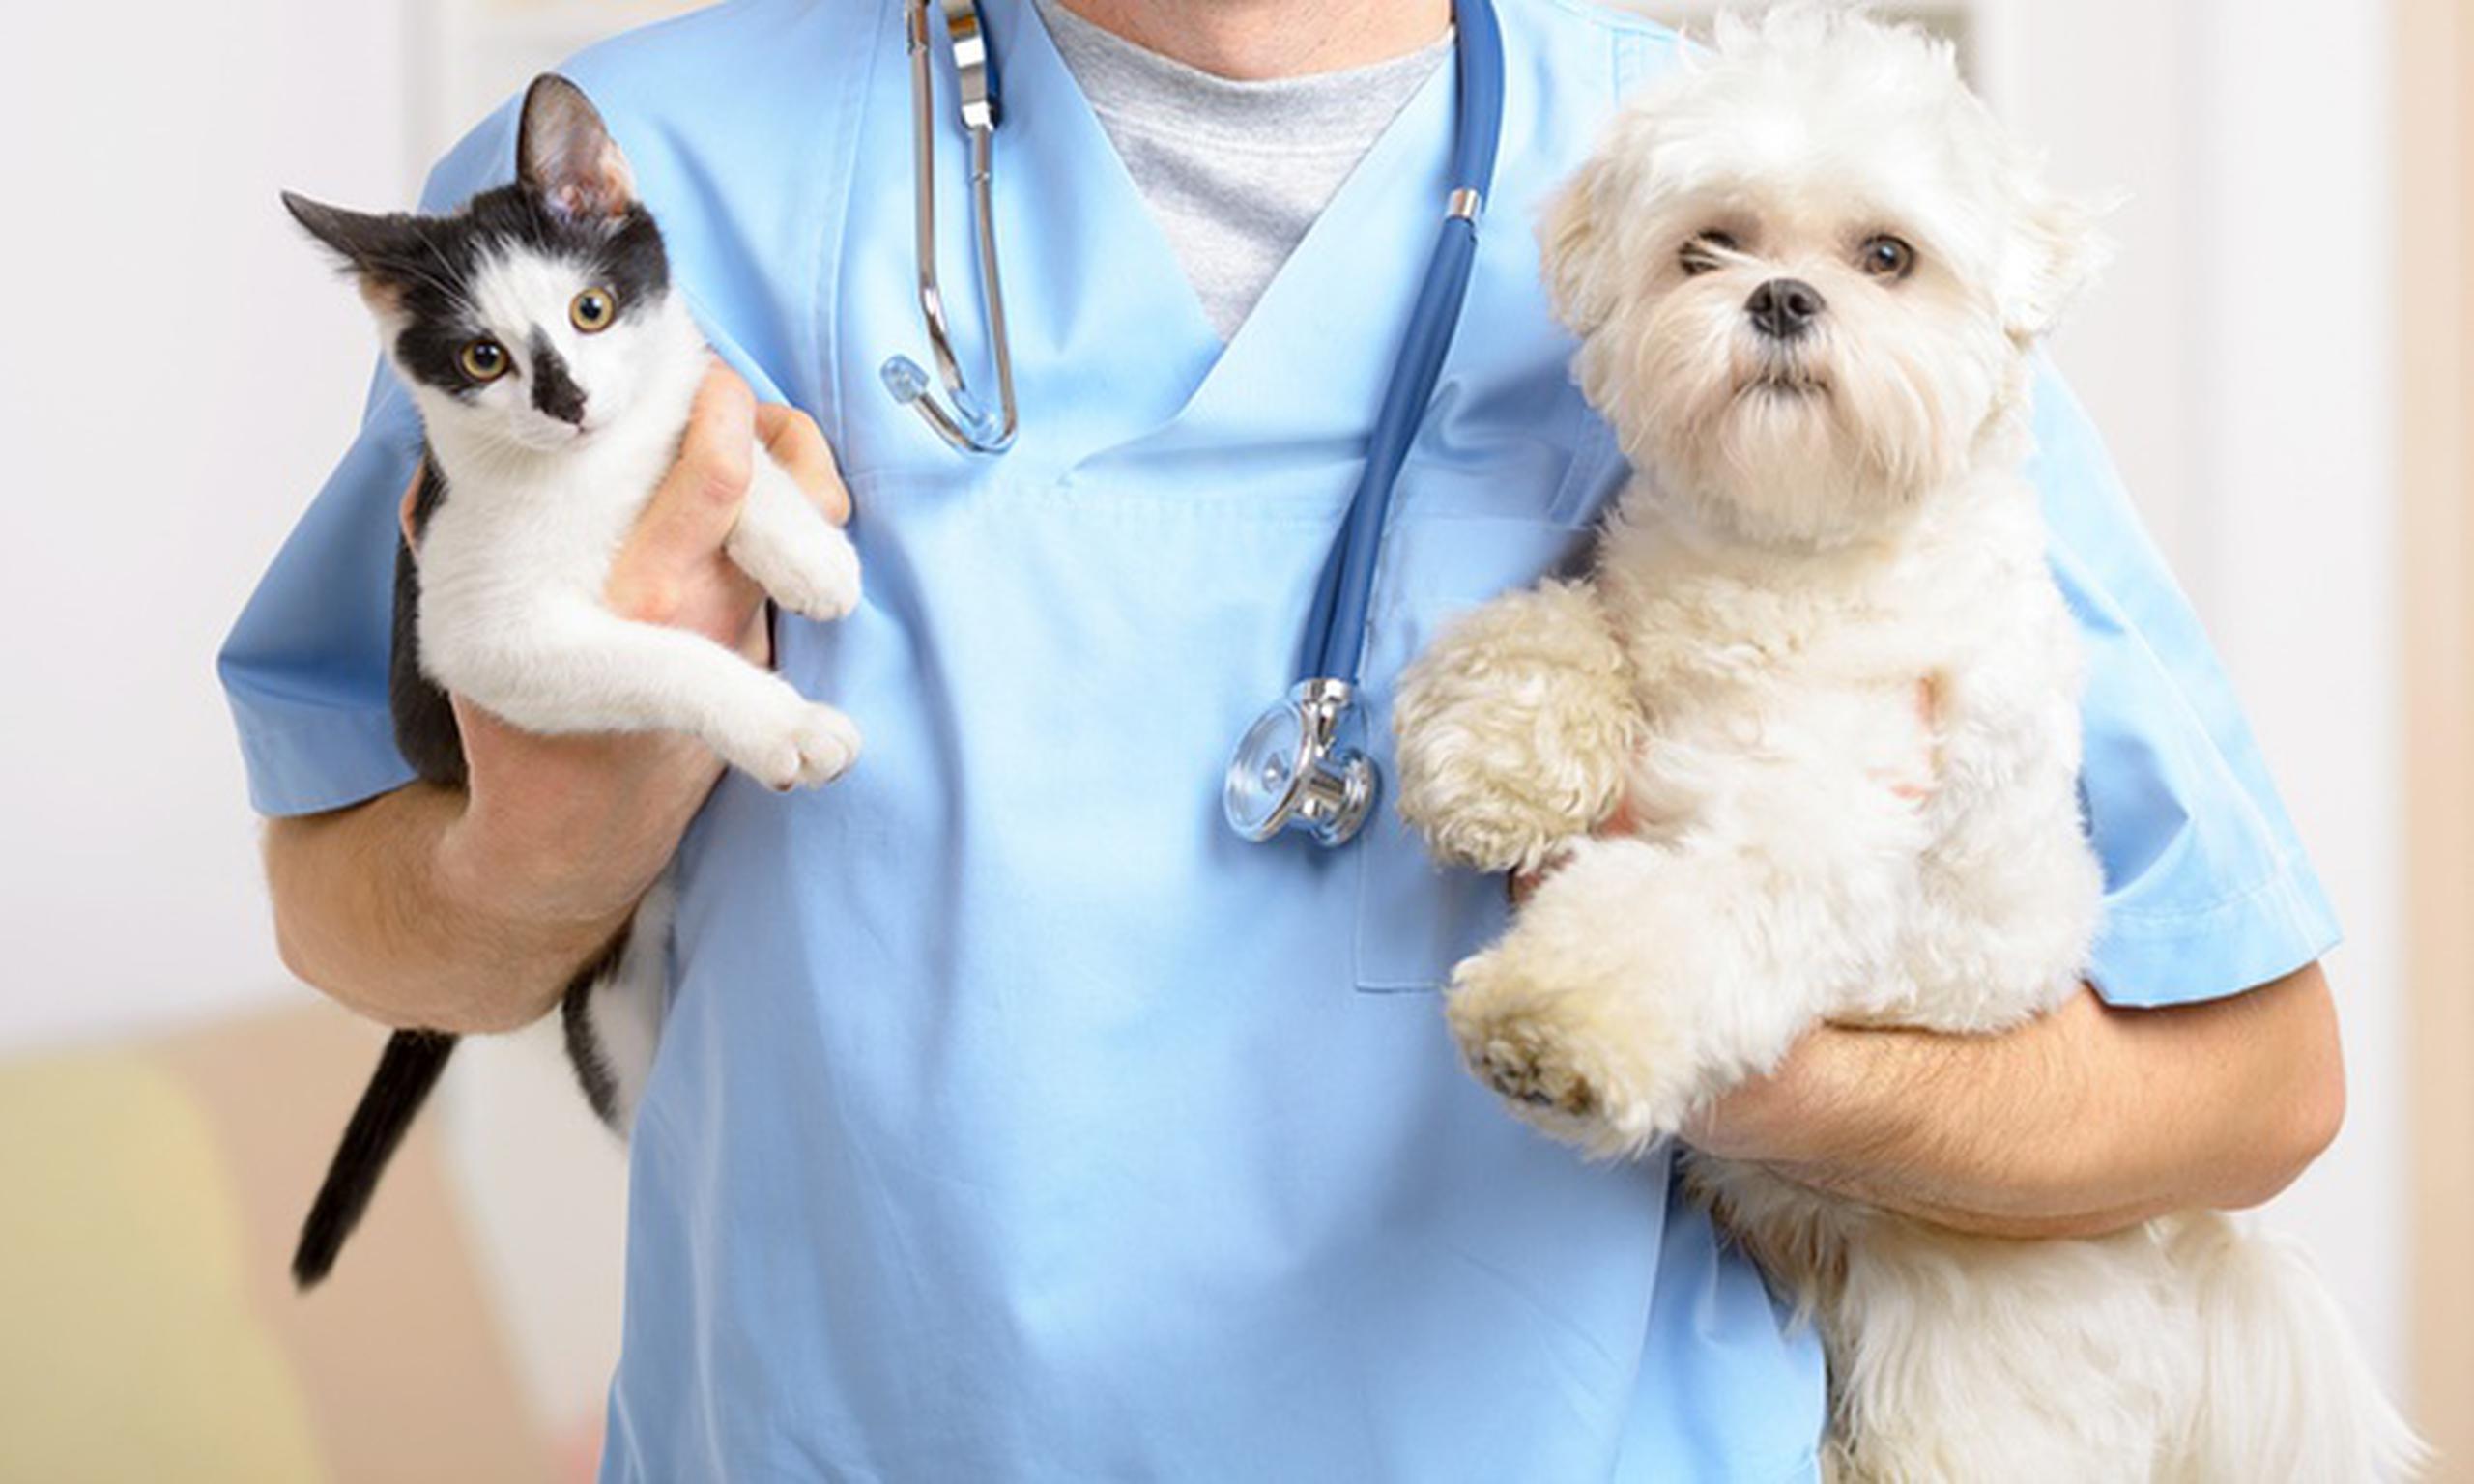 Unos 12.6 millones de hogares de Estados Unidos llevaron a casa una nueva mascota el año pasado después de que se declarase una pandemia en marzo de 2020, según el COVID-19 Pulse Study de la American Pet Products Association.